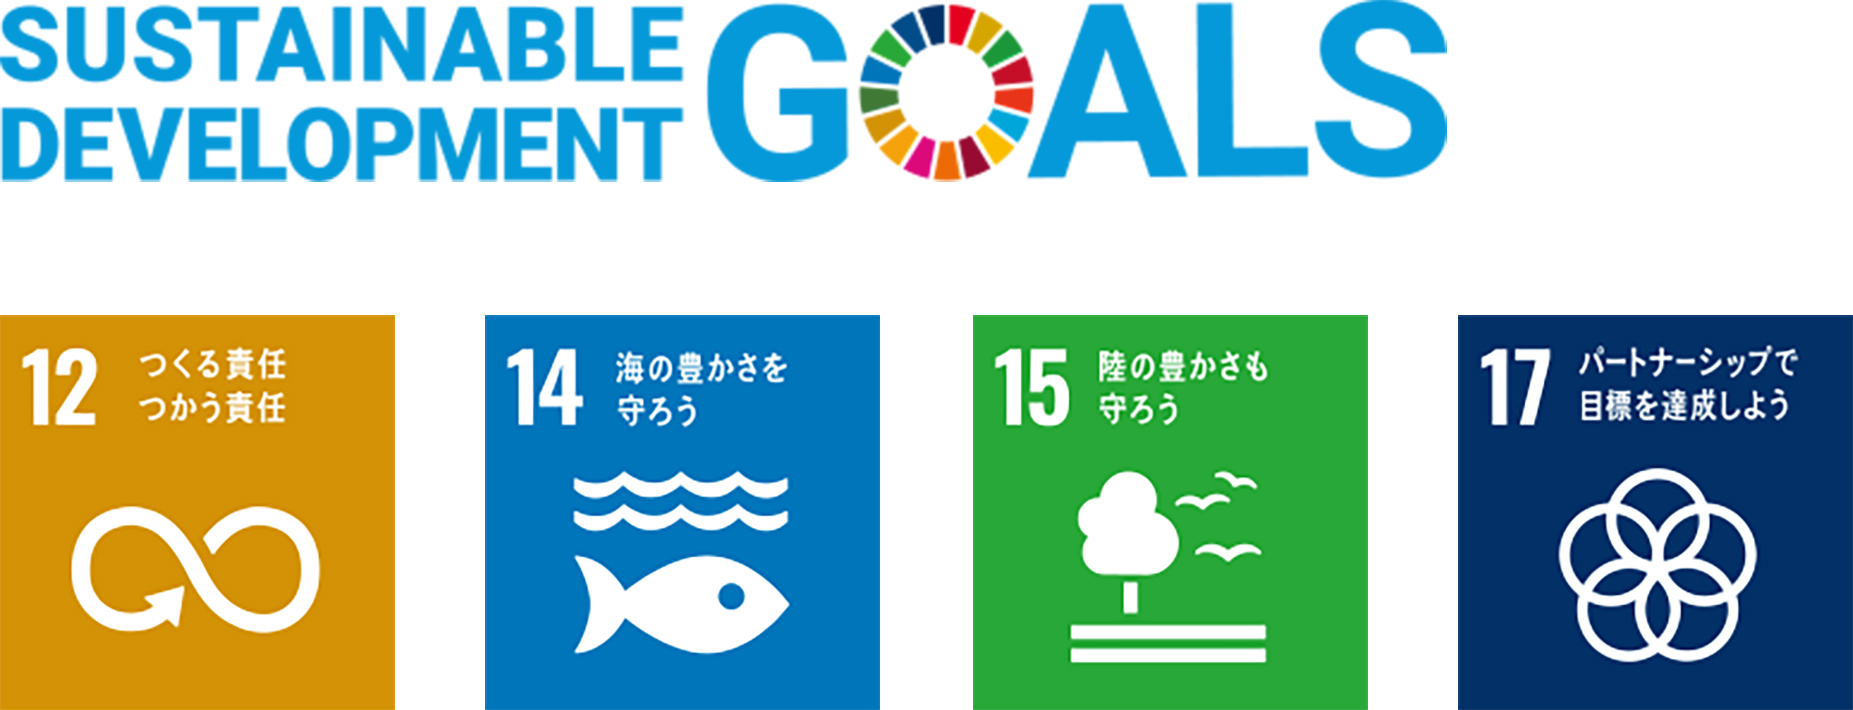 SDGs目標への貢献